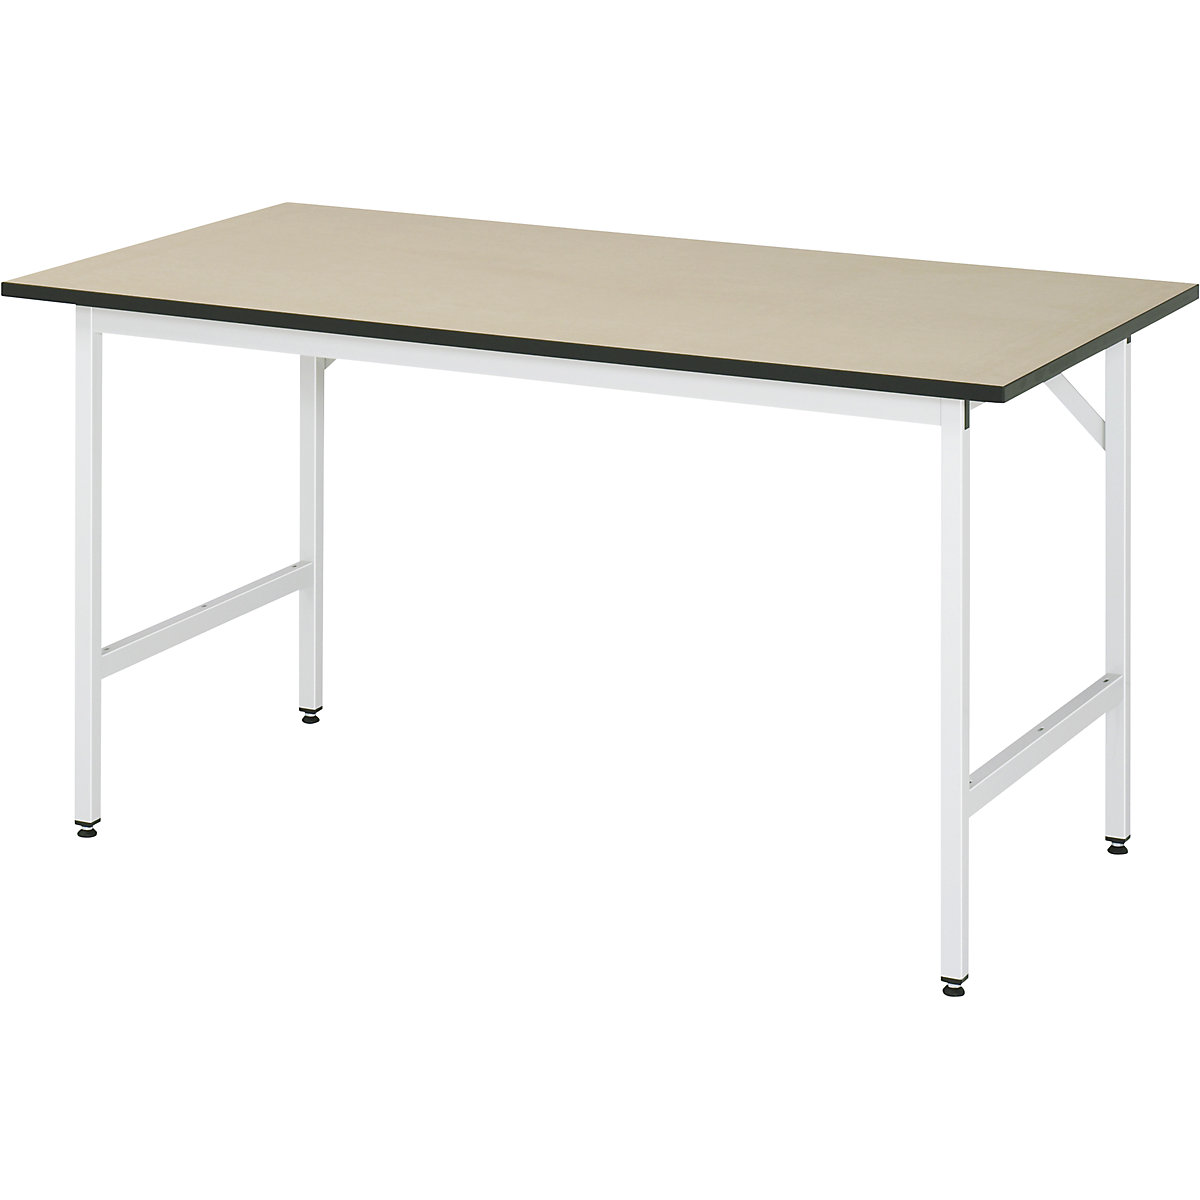 Stół roboczy, z regulacją wysokości – RAU, 800 – 850 mm, płyta MDF, szer. x głęb. 1500 x 800 mm, jasnoszary-9